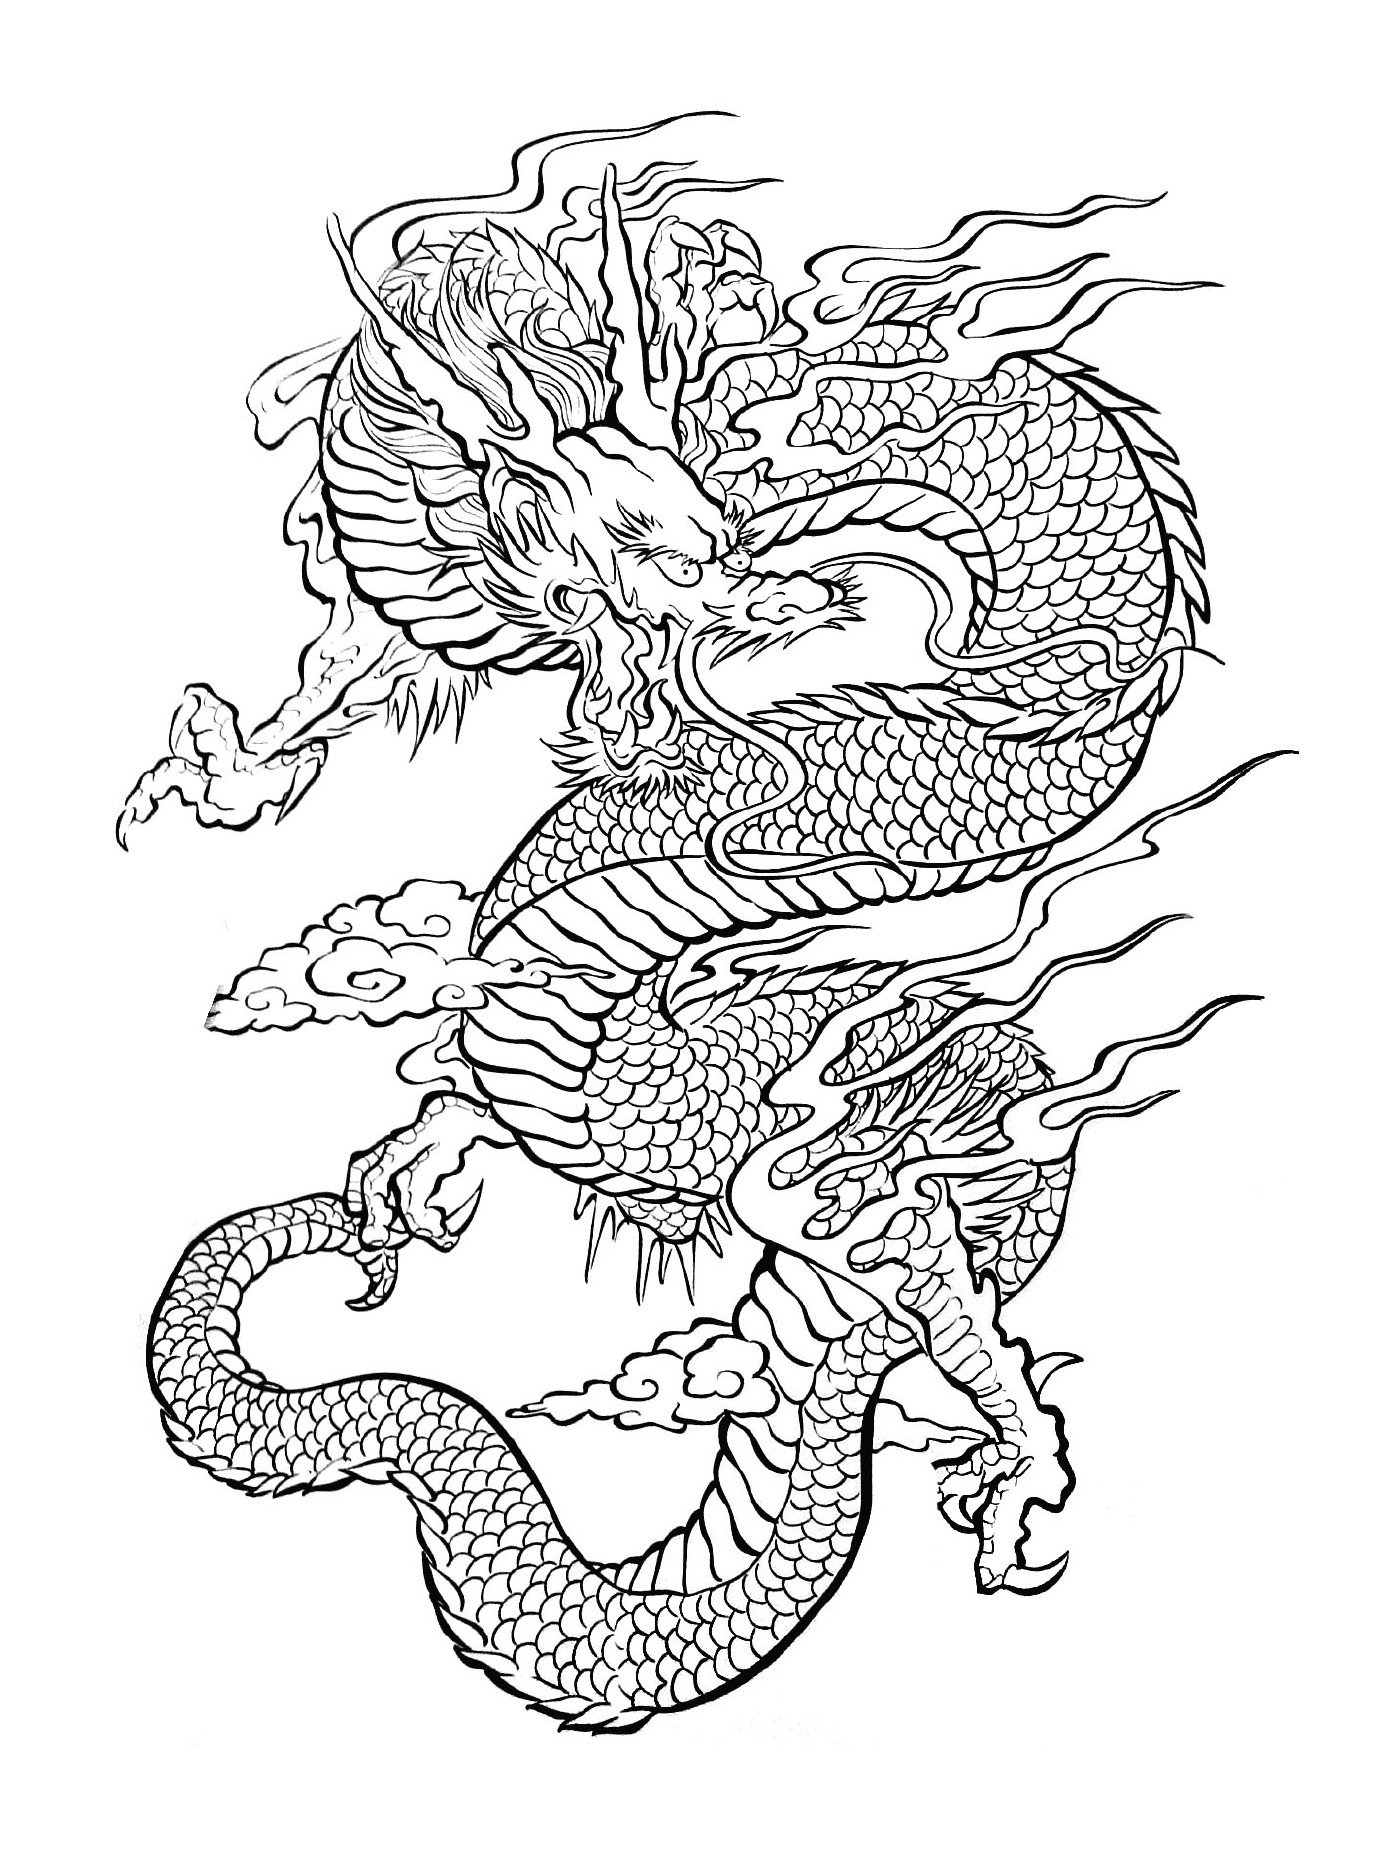  Eine Illustration eines orientalischen Drachen, der in der Luft fliegt 